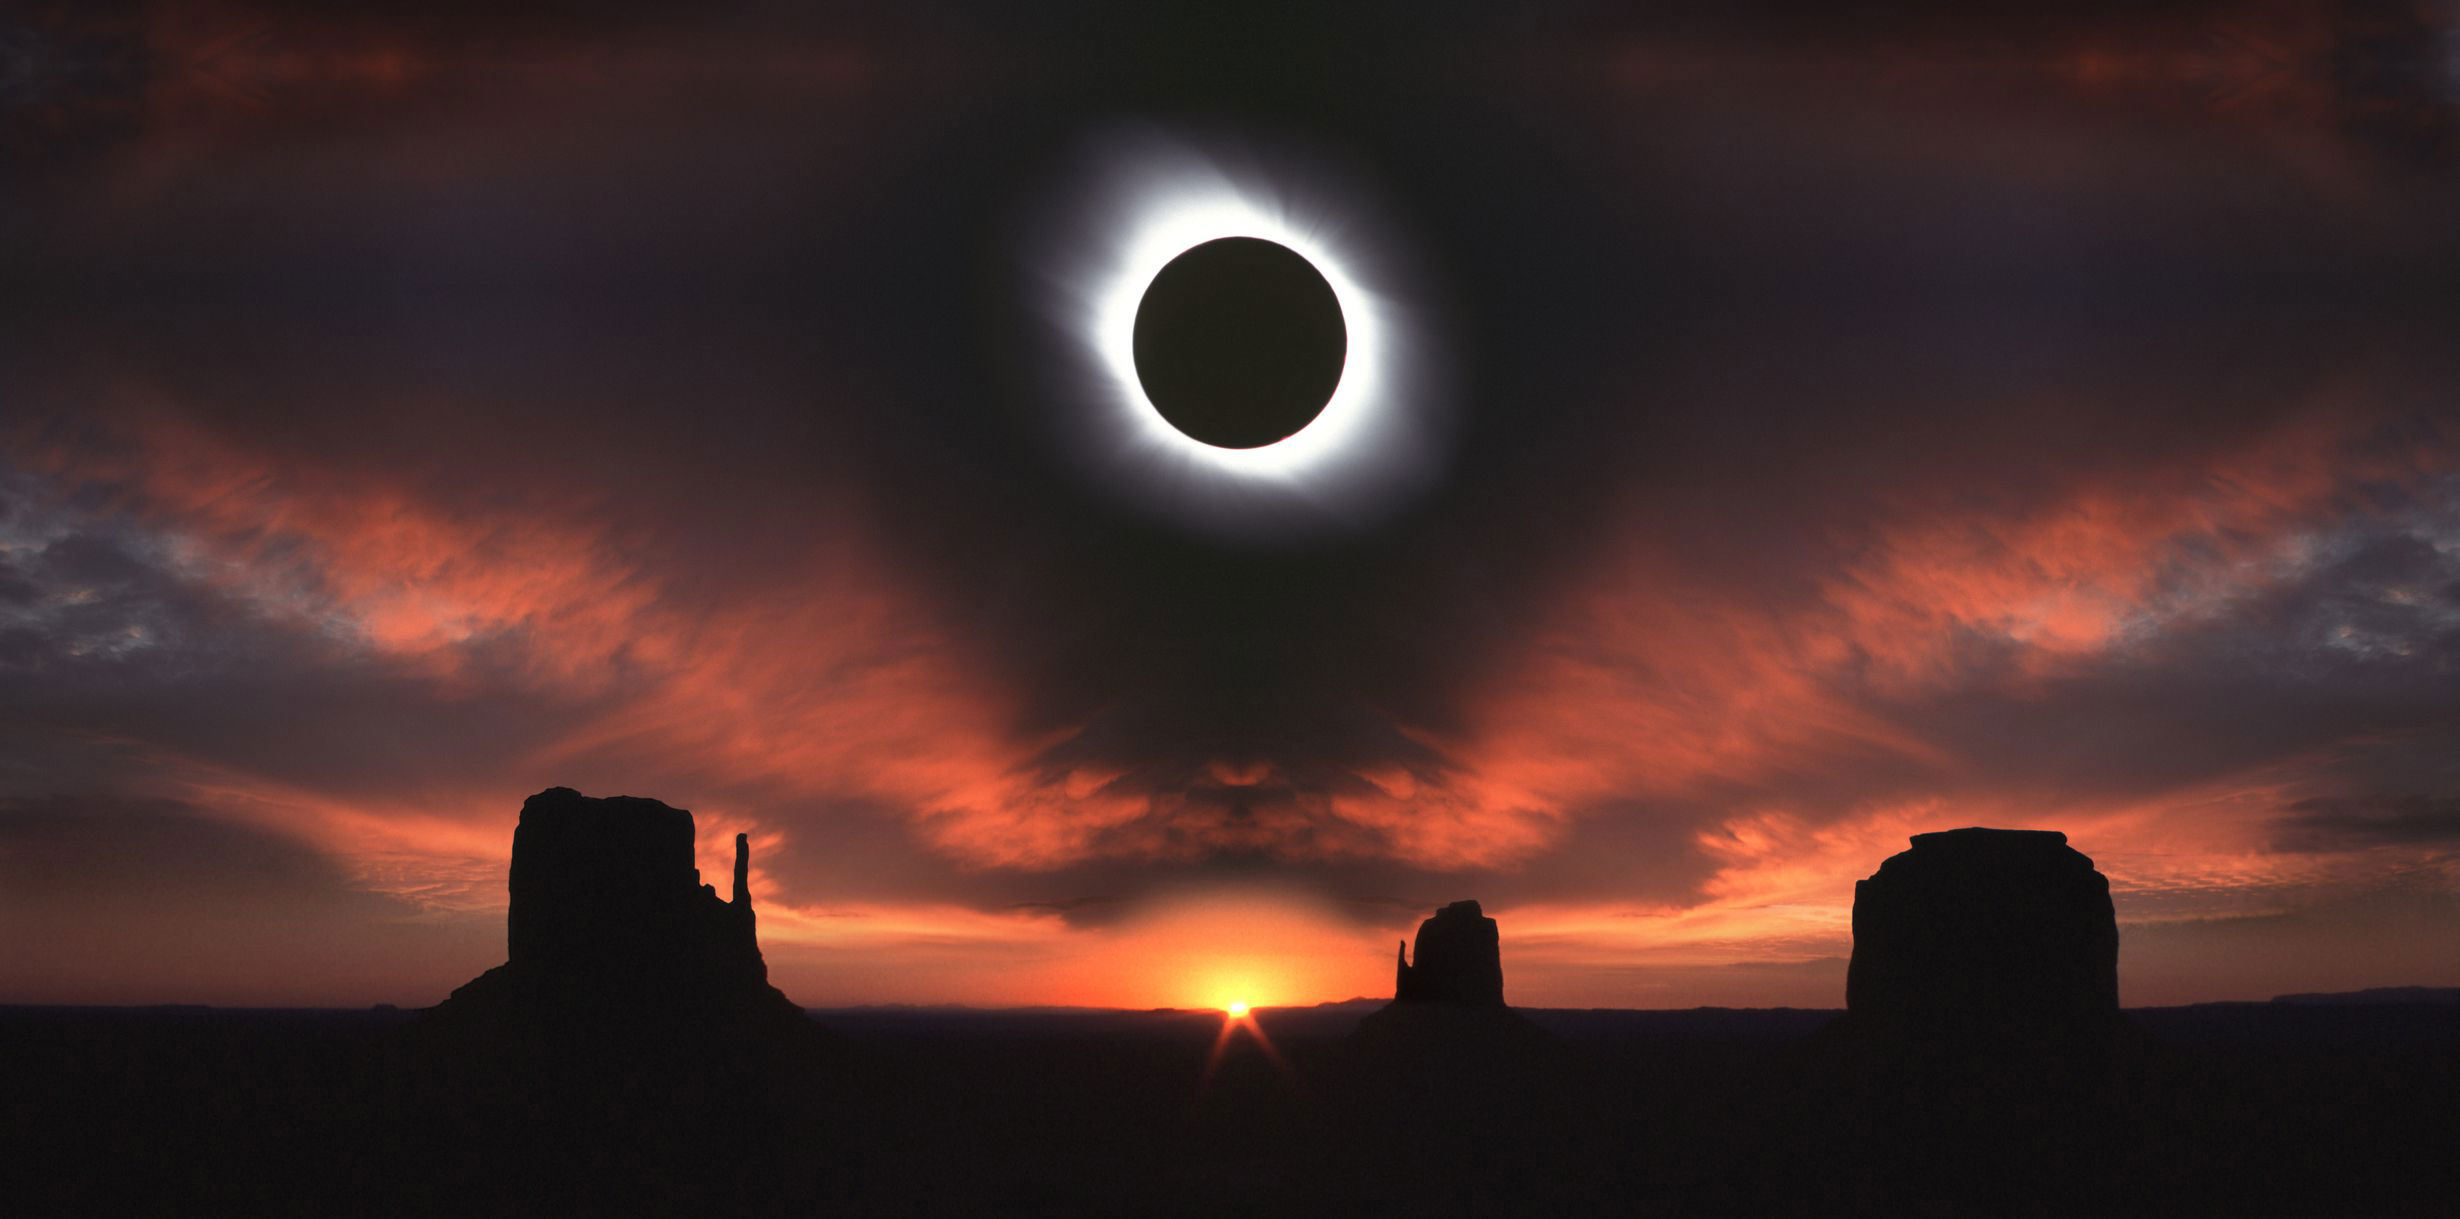 Eclipse solar hora y día para observar el fenómeno astronómico que